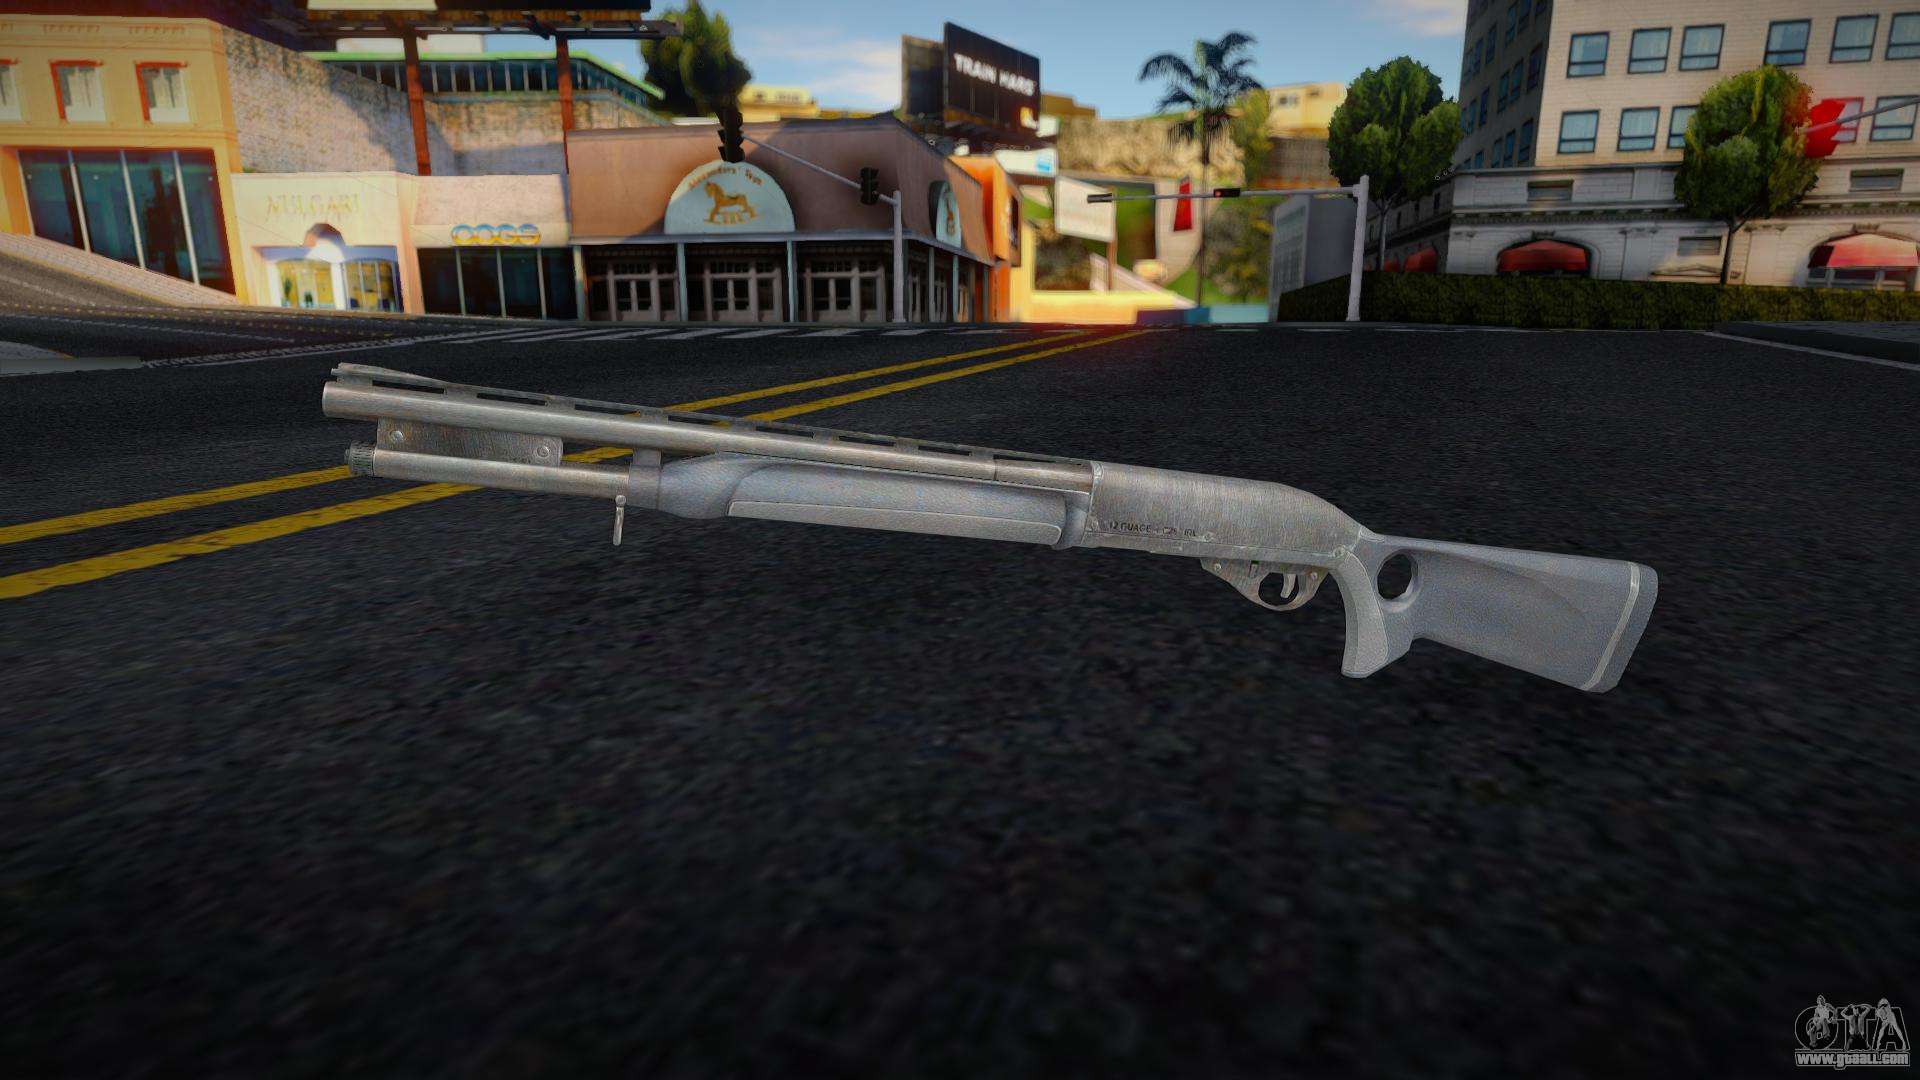 Pumpshot from GTA IV (SA Style Icon) for GTA San Andreas